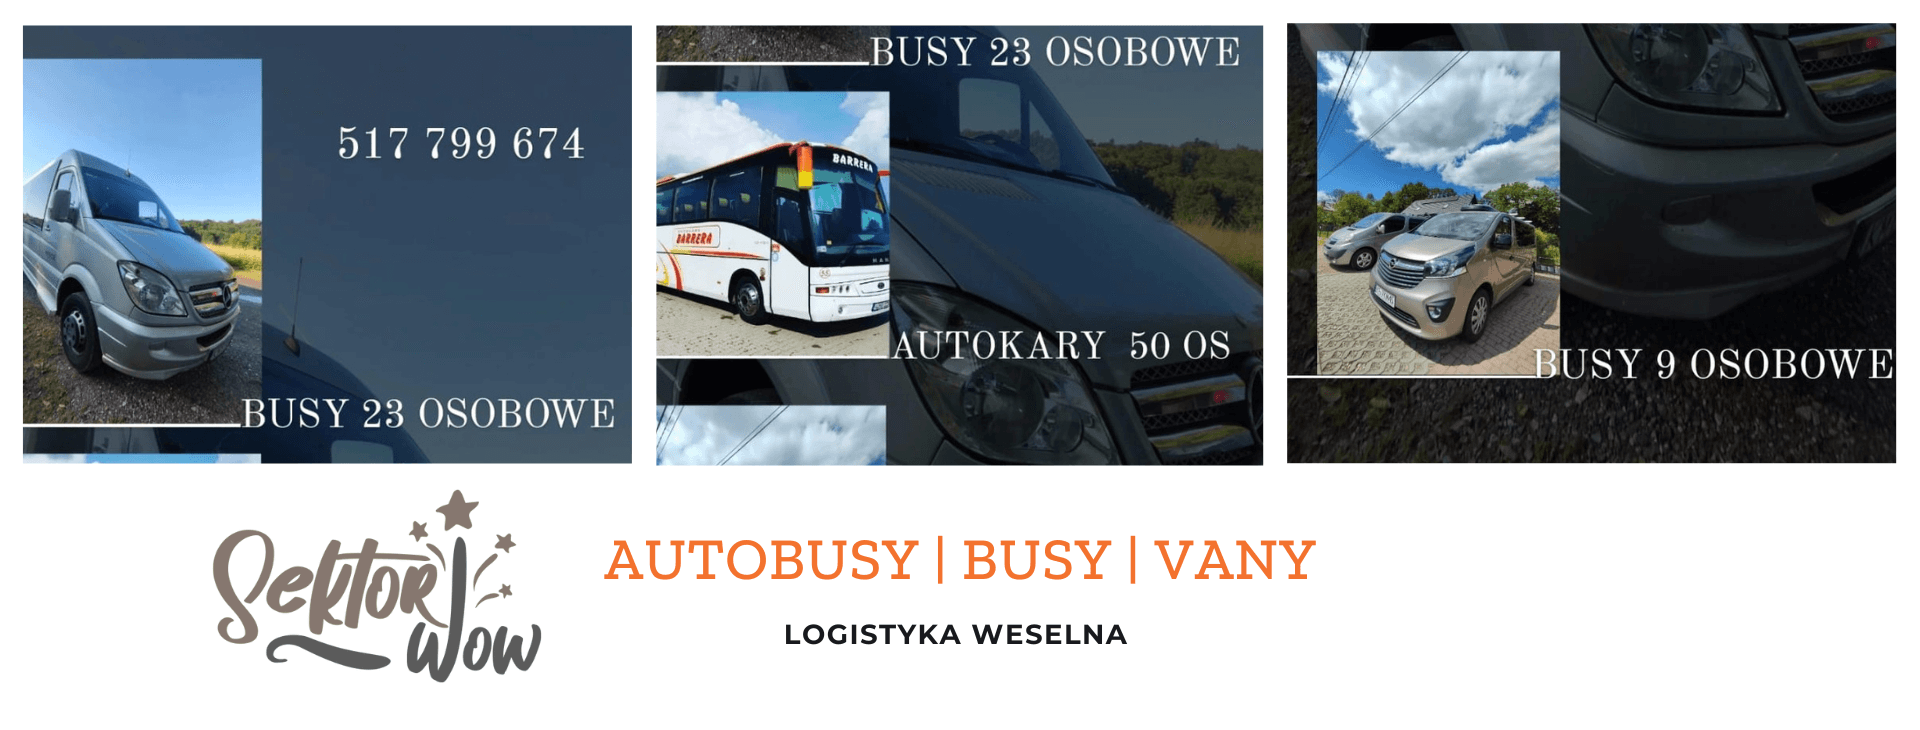 Busy i Autobusy - Sektor WOW | Wynajem busów Myślenice, małopolskie - cover